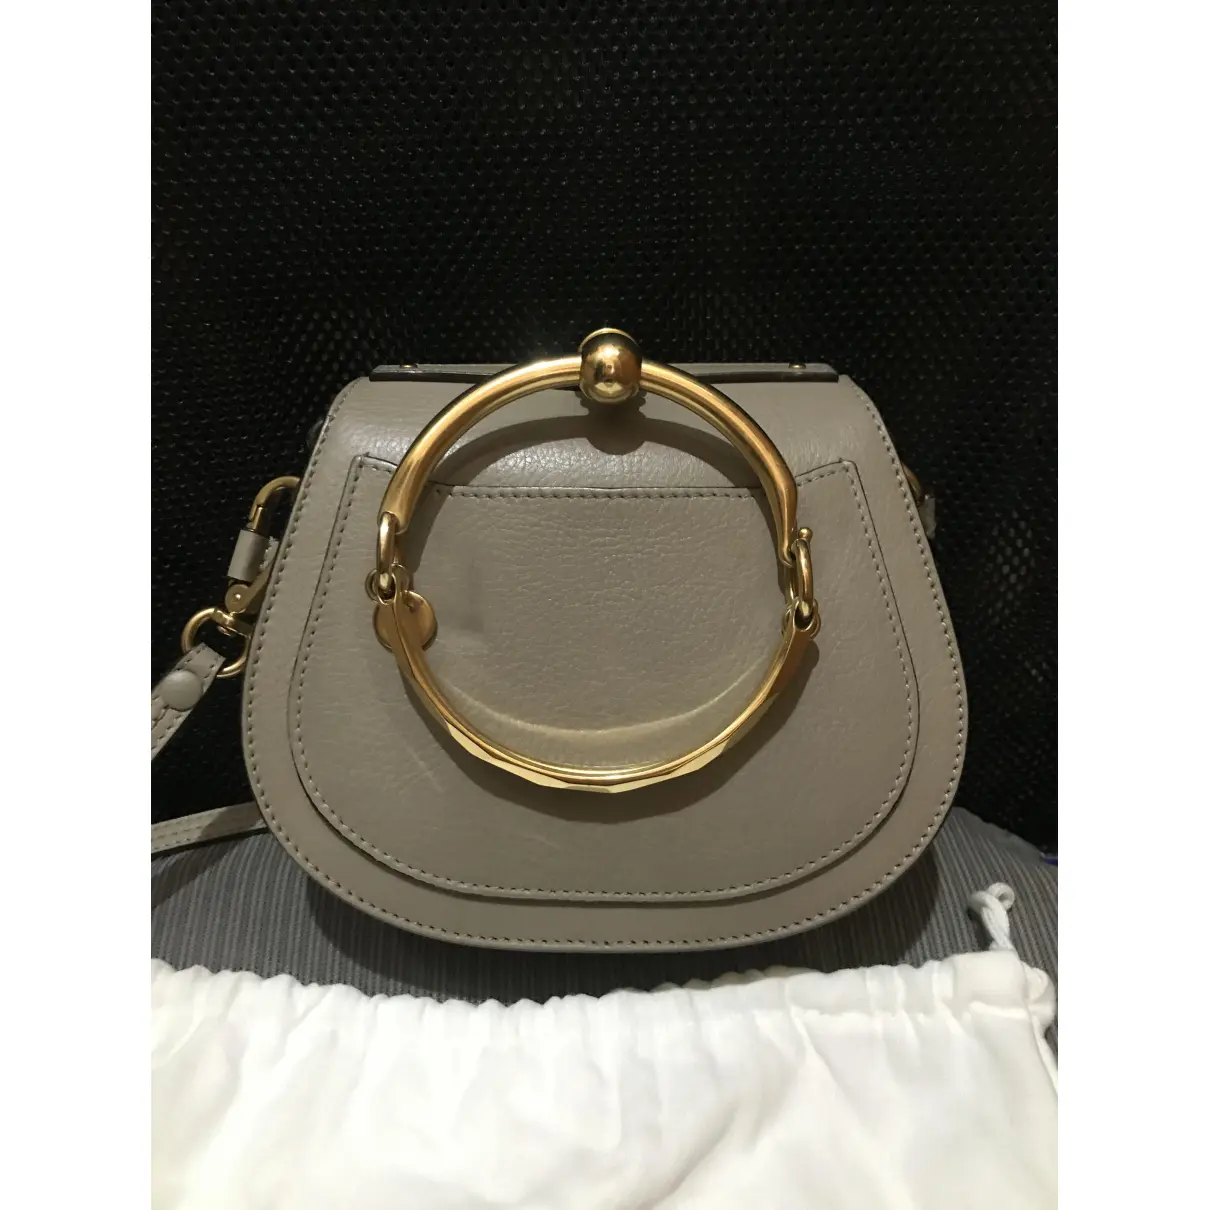 Buy Chloé Bracelet Nile handbag online